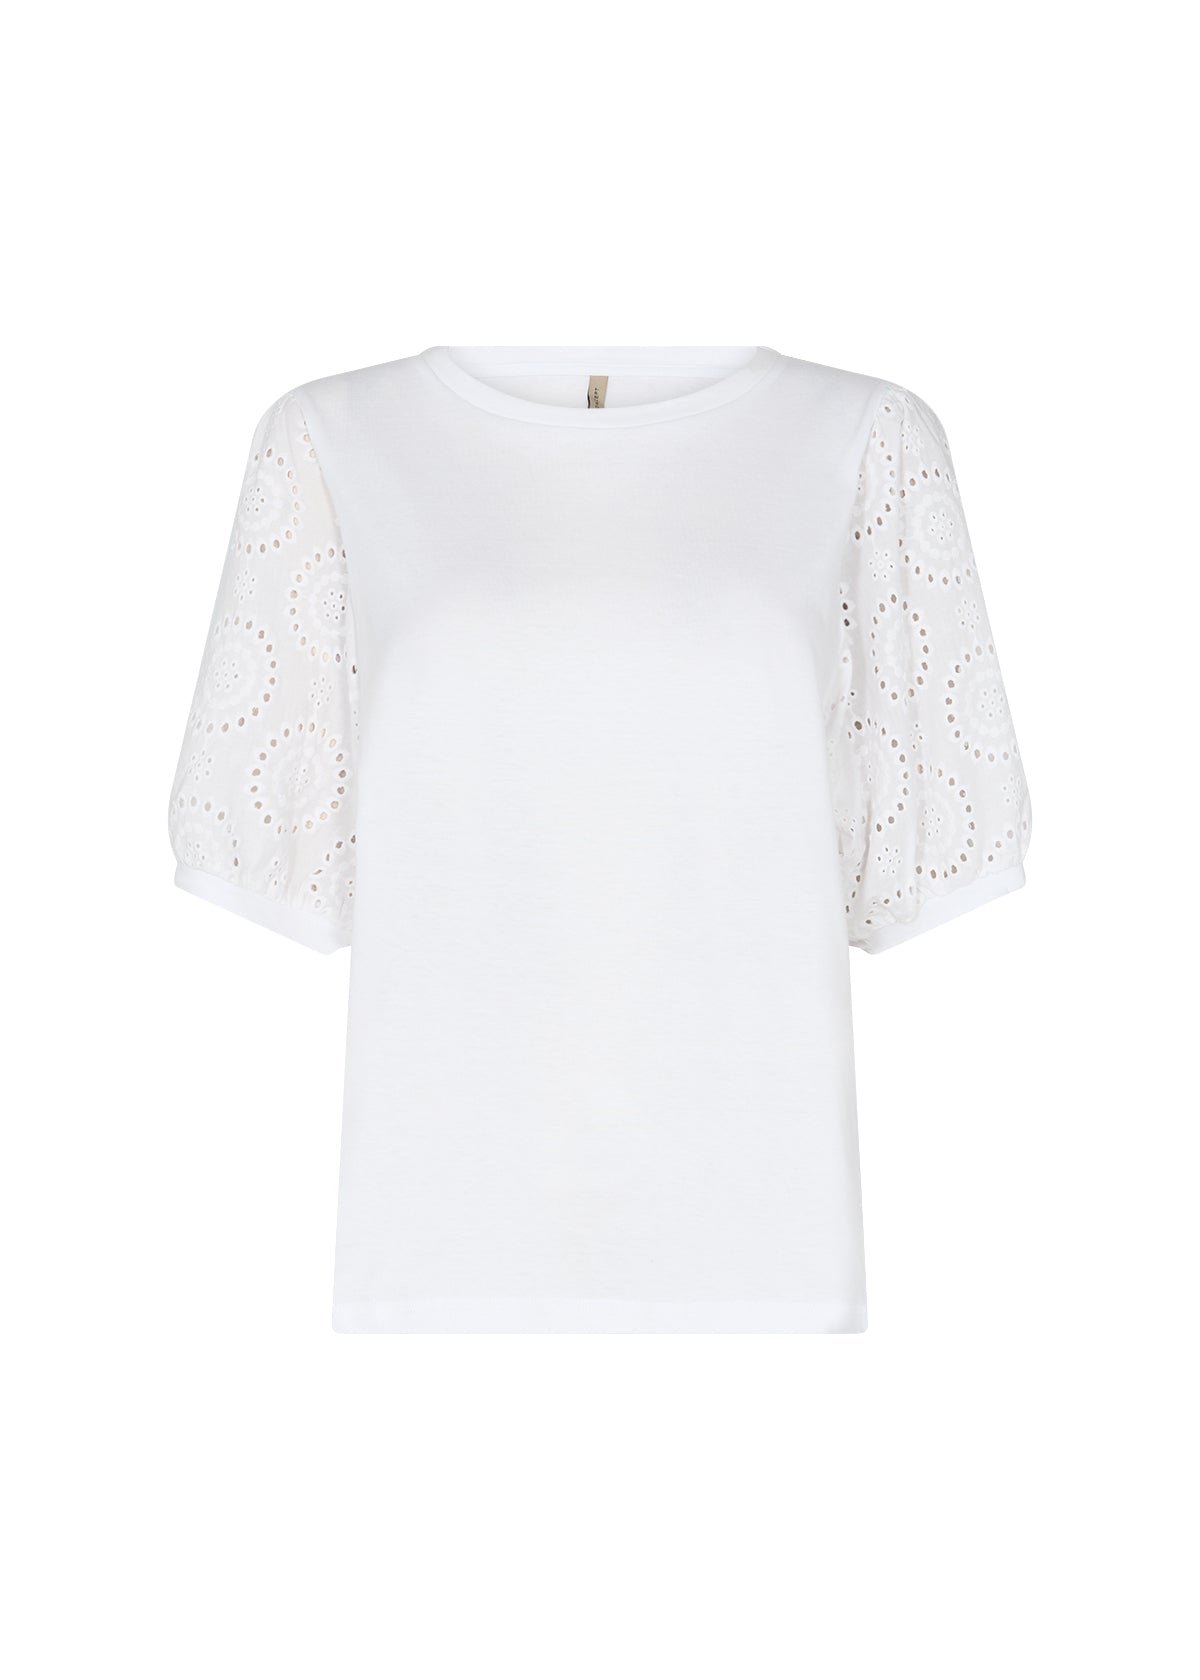 Soya Concept Loraine 3 blouse